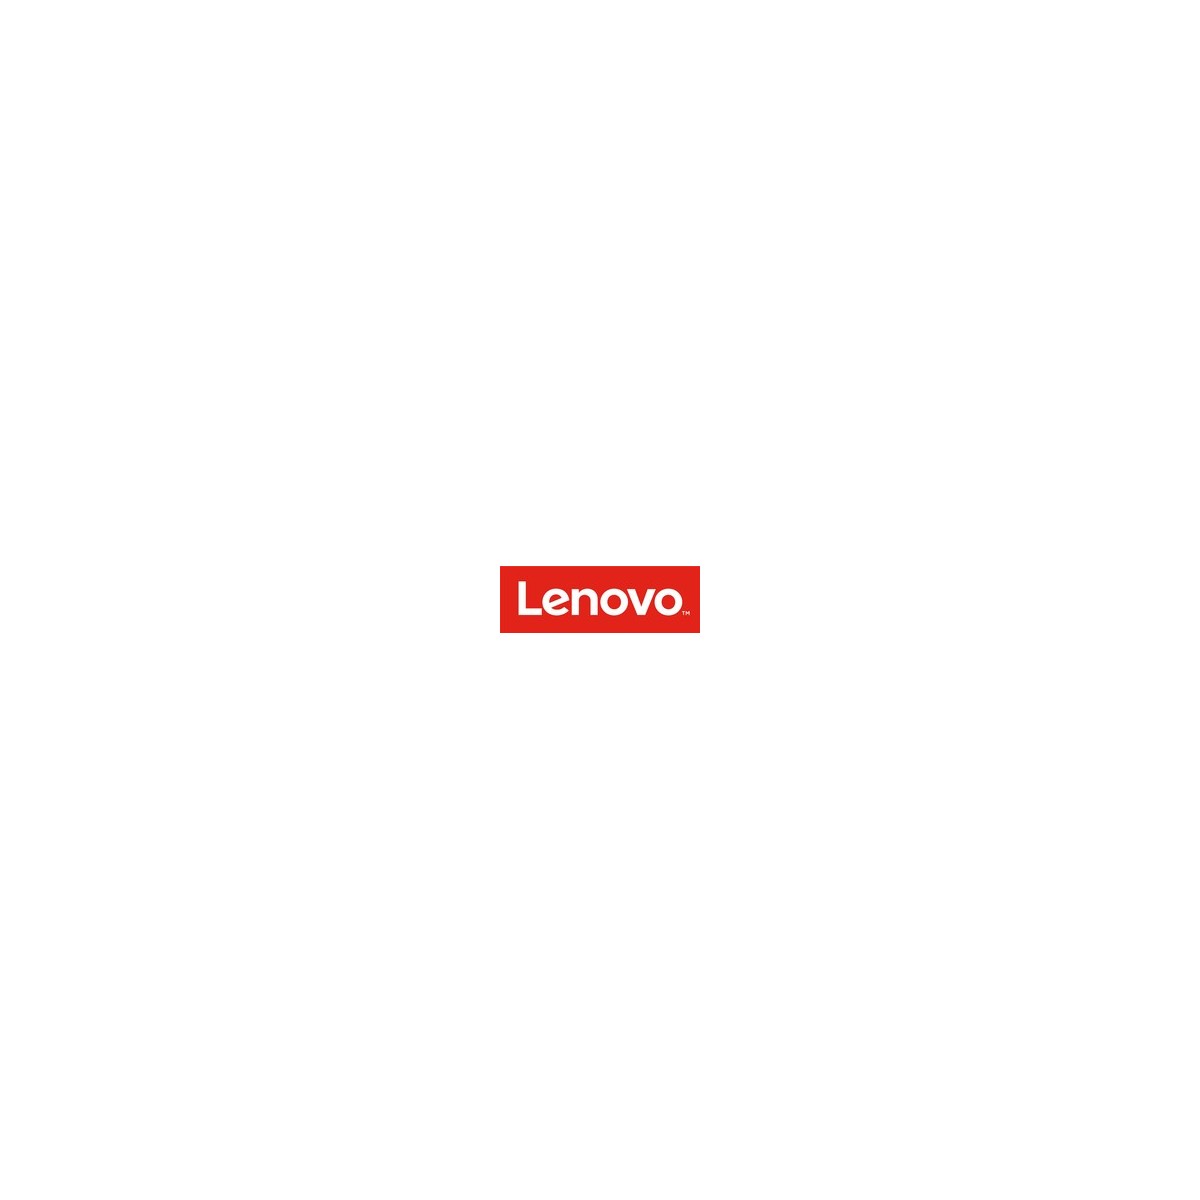 Lenovo 7S05005UWW - Lizenz - Betriebssystem - Multilingual DVD Nur Lizenz Vollversion